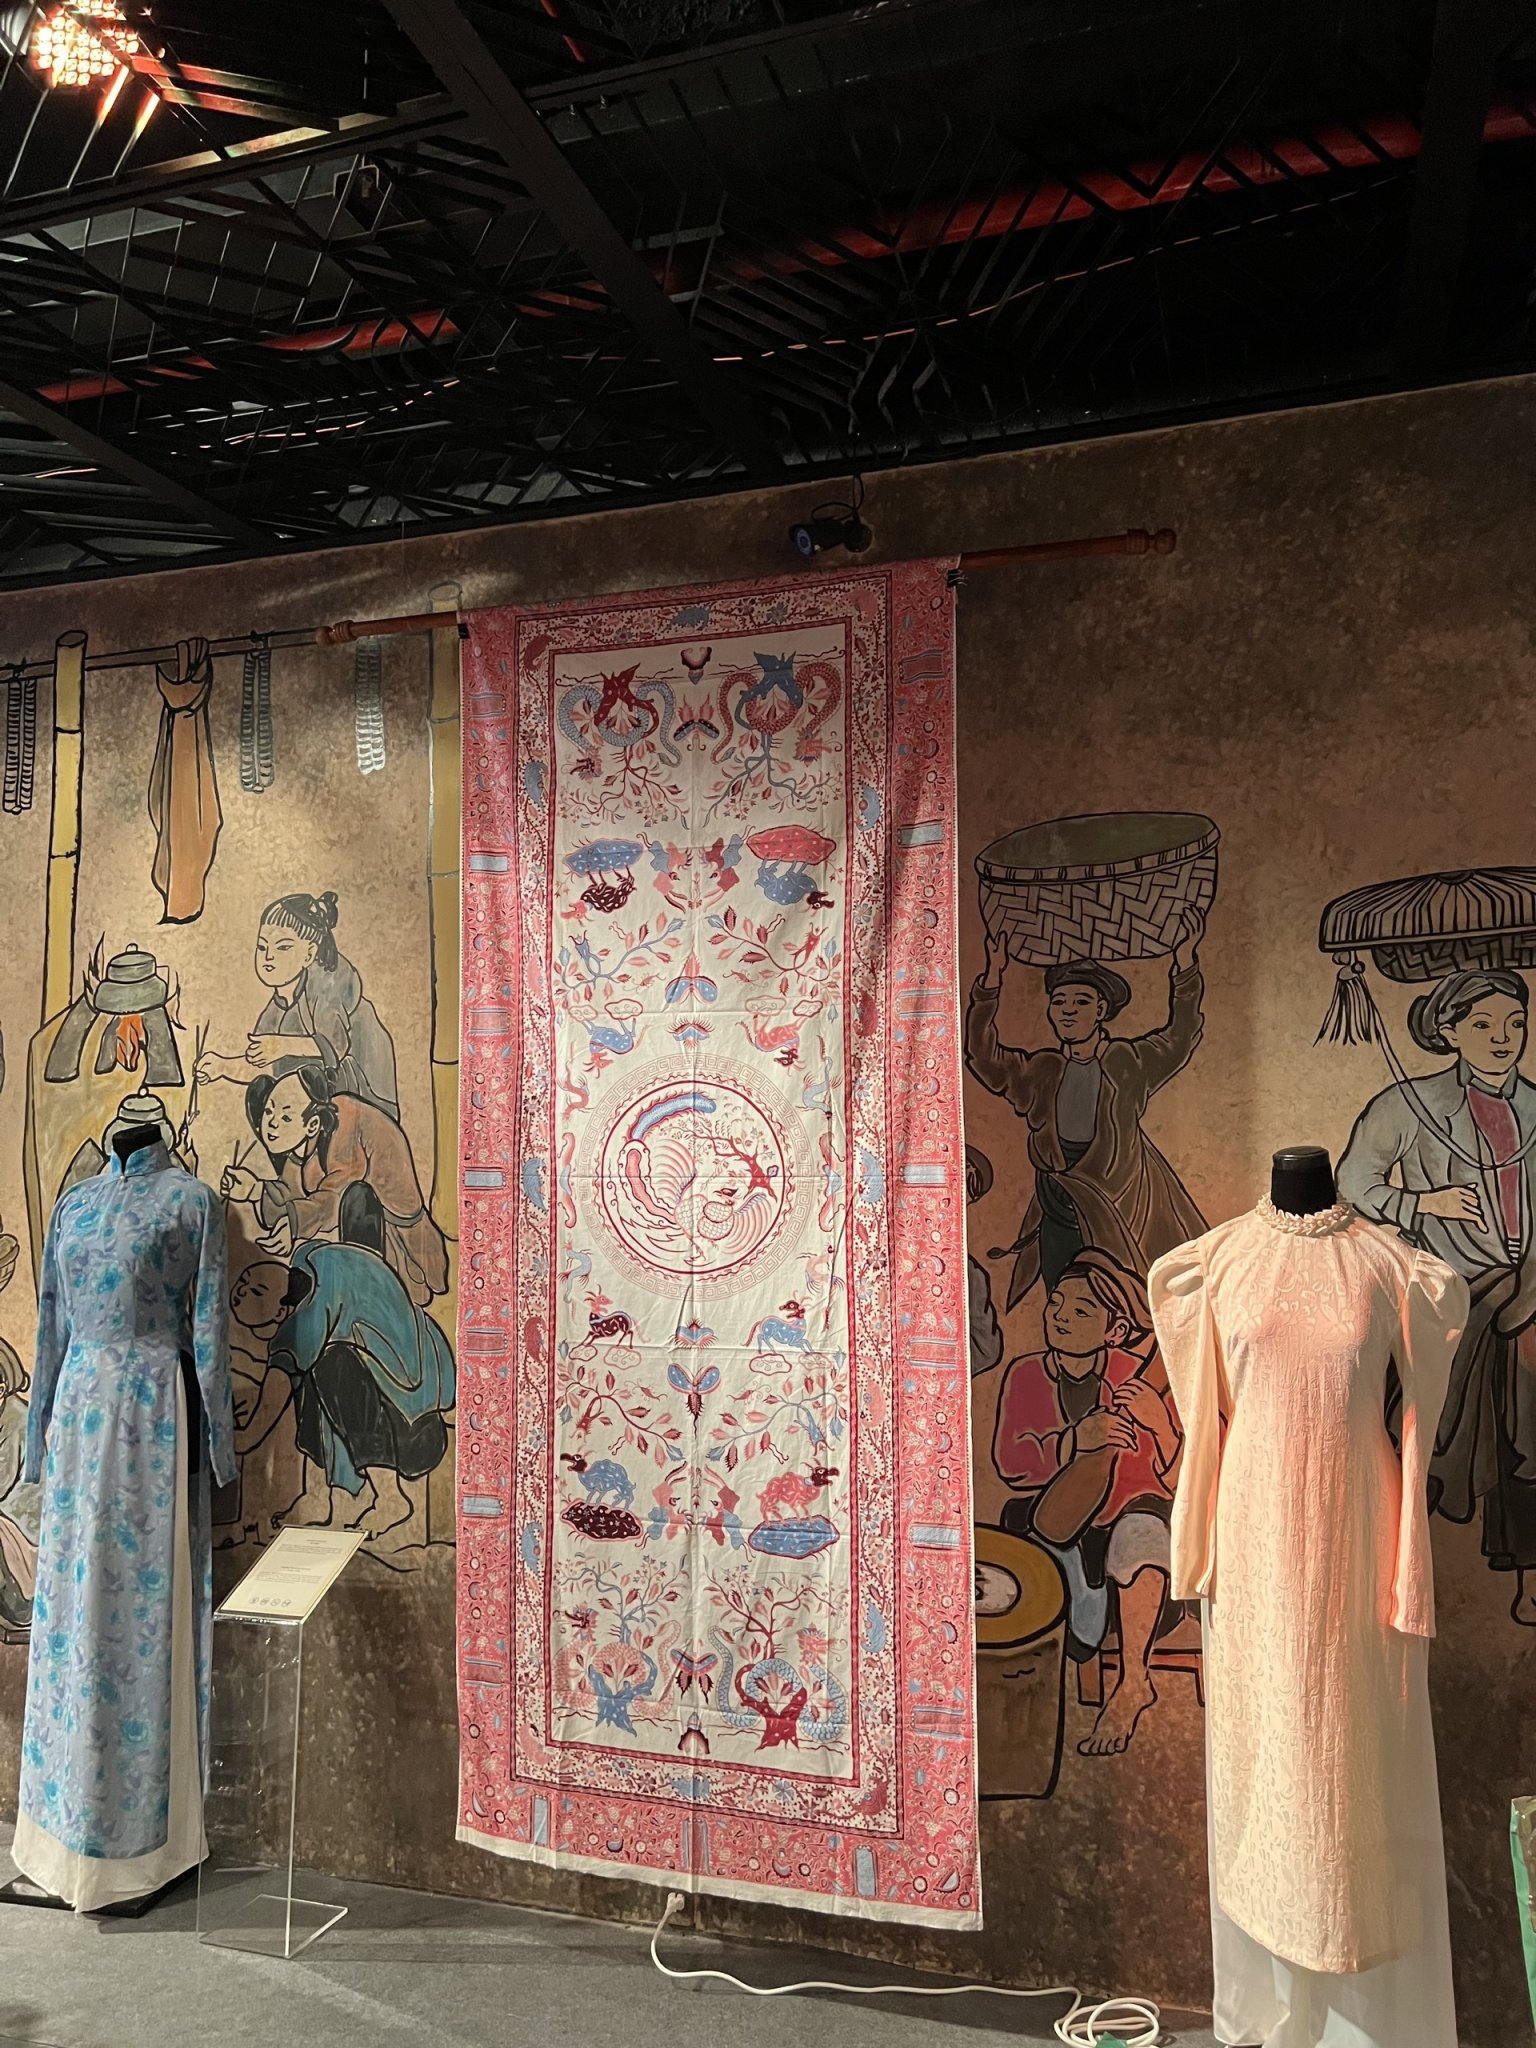 Batik là loại vải truyền thống của Indonesia, được thực hiện bằng kỹ thuật nhuộm sáp, in hoa văn bằng phương pháp thủ công hoàn toàn. Mỗi tấm vải mất vài tháng đến vài năm để hoàn thành. Theo lịch sử ghi chép lại, Batik xuất hiện vào khoảng thế kỷ 13 tại Indonesia. Kỹ thuật sản xuất Batik đã được UNESCO công nhận là di sản văn hoá phi vật thể vào năm 2009.